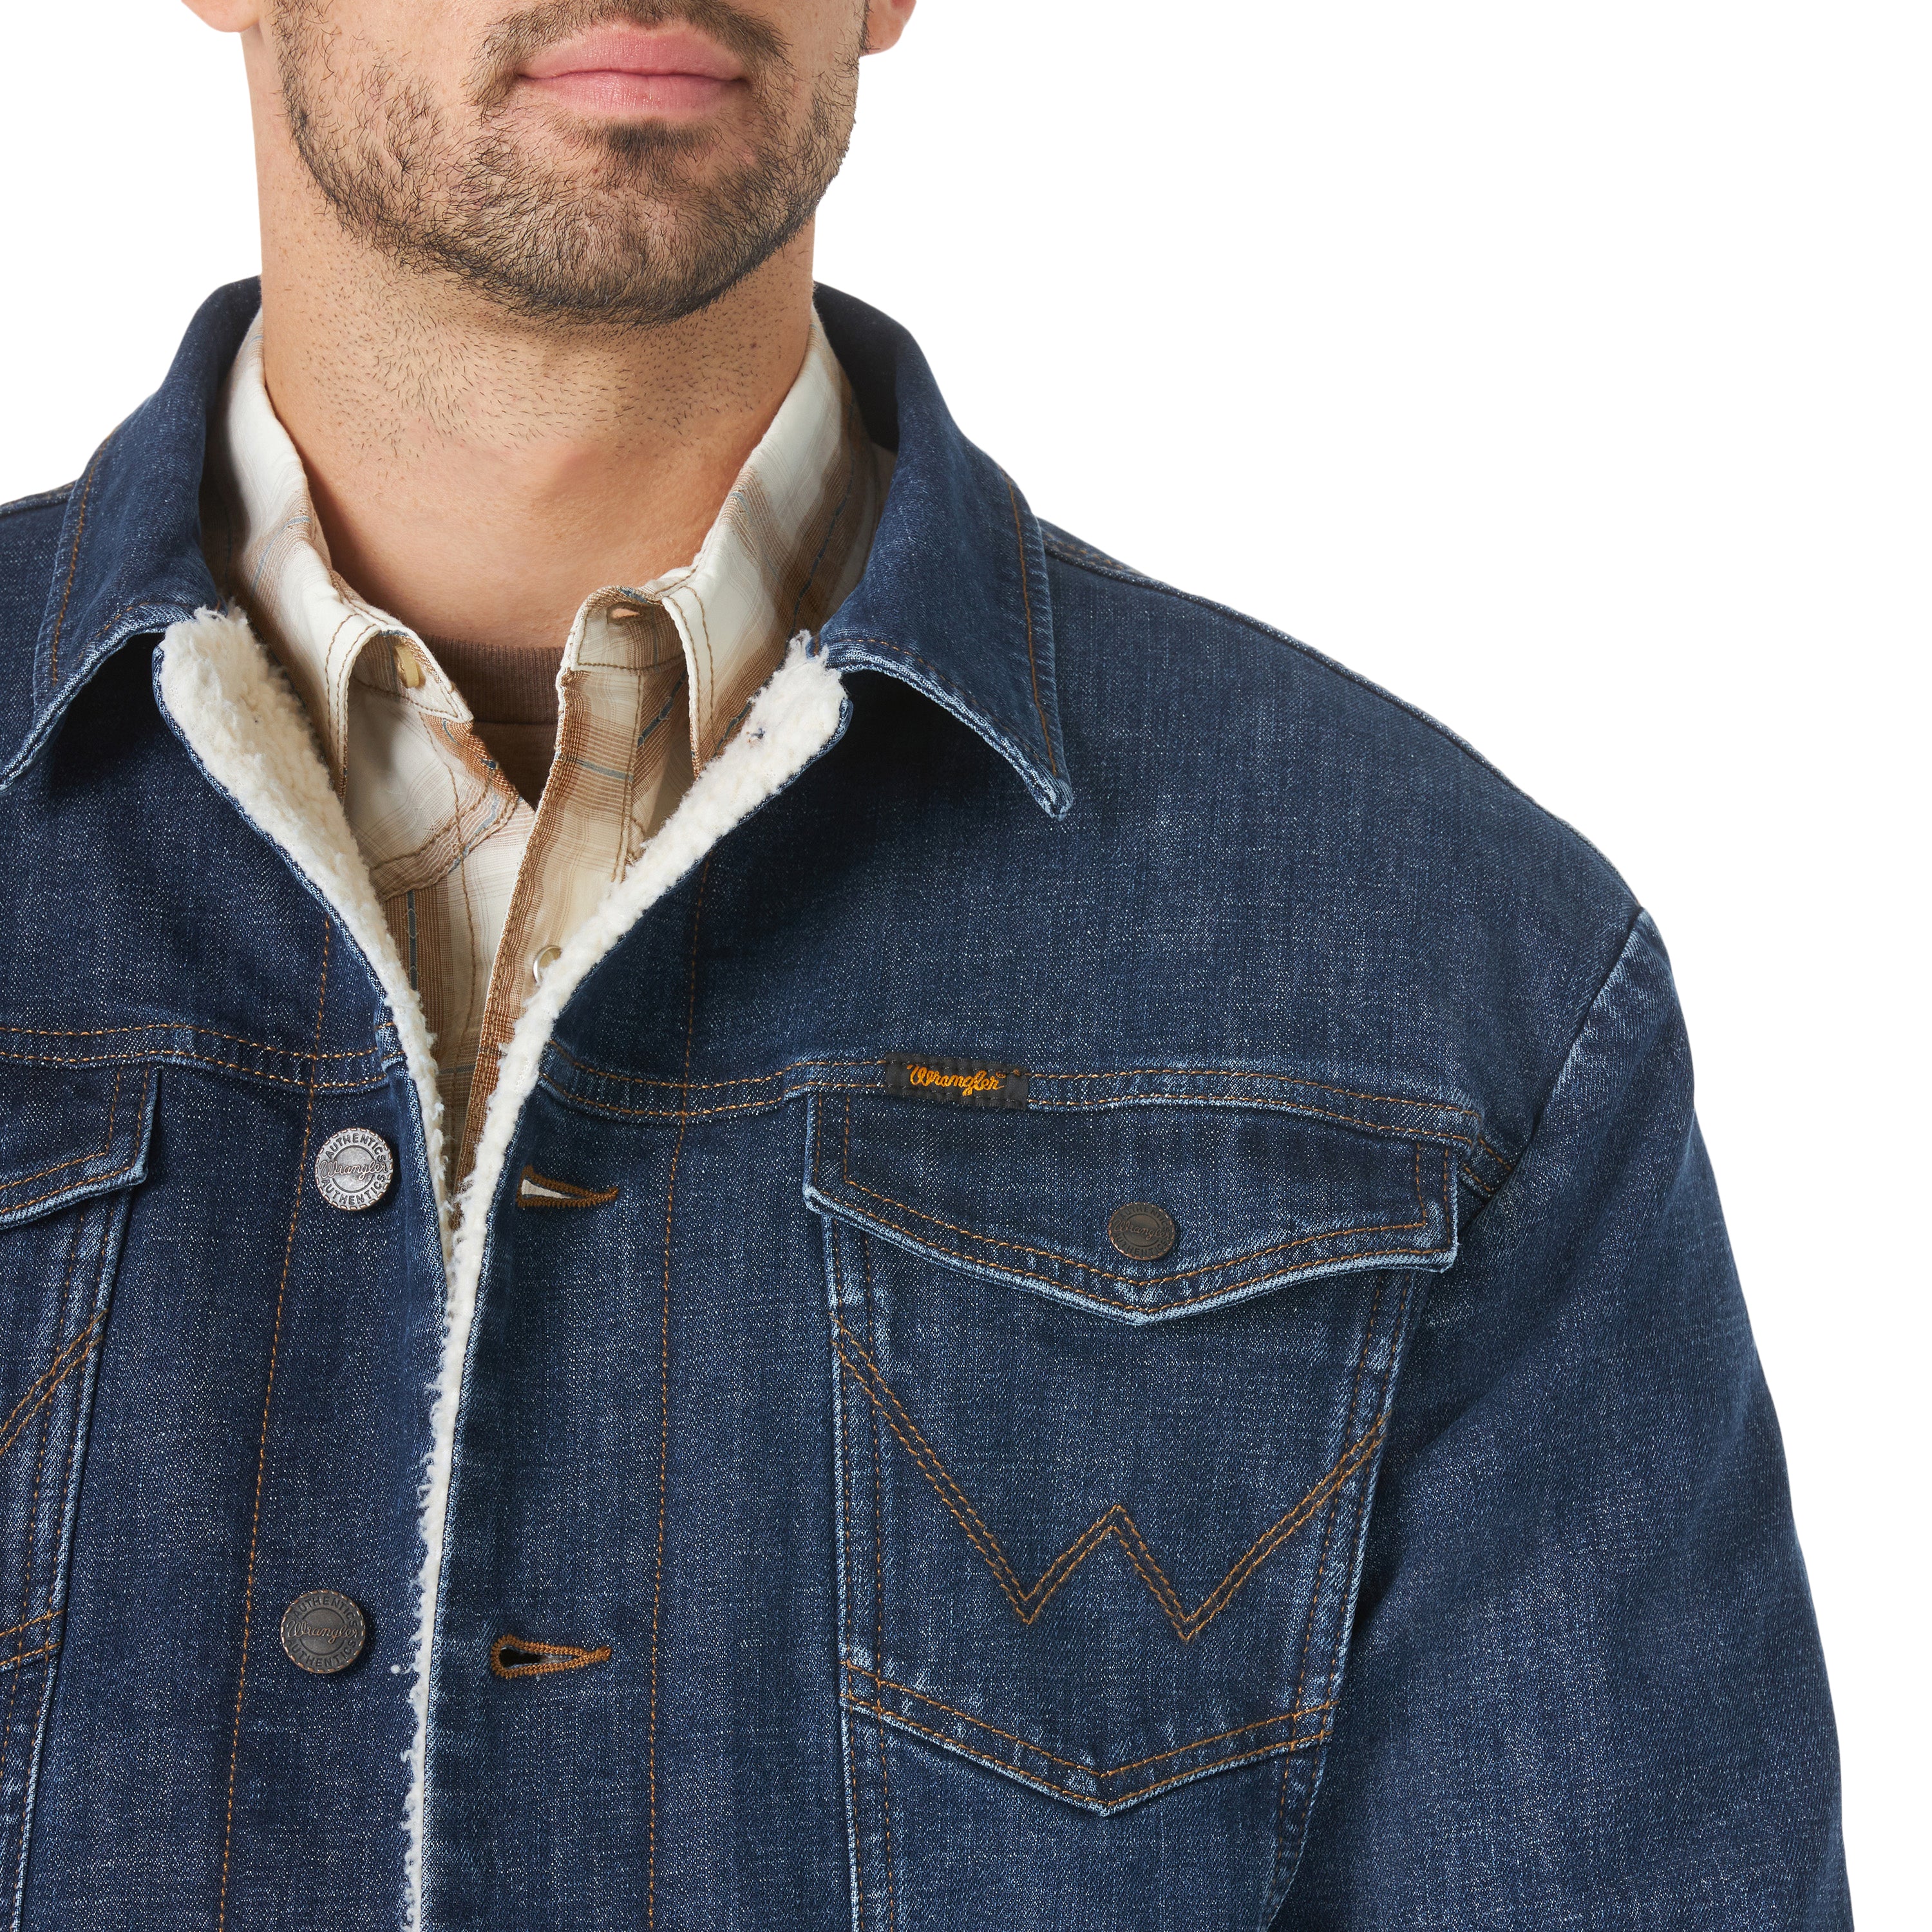 Wrangler Men's Lined Denim Jacket